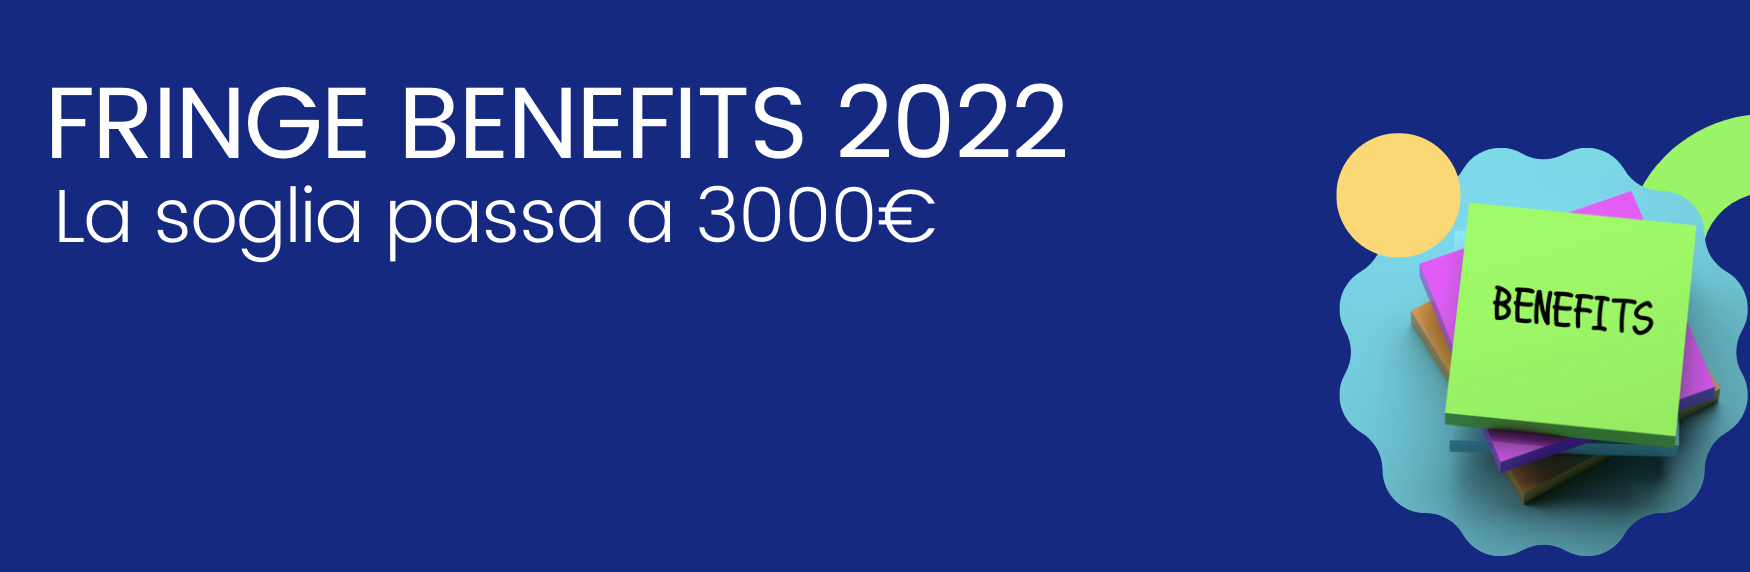 Fringe benefit fino a 3.000 euro per dipendenti e Amm.ri novità rimborso Utenze Domestiche 2022